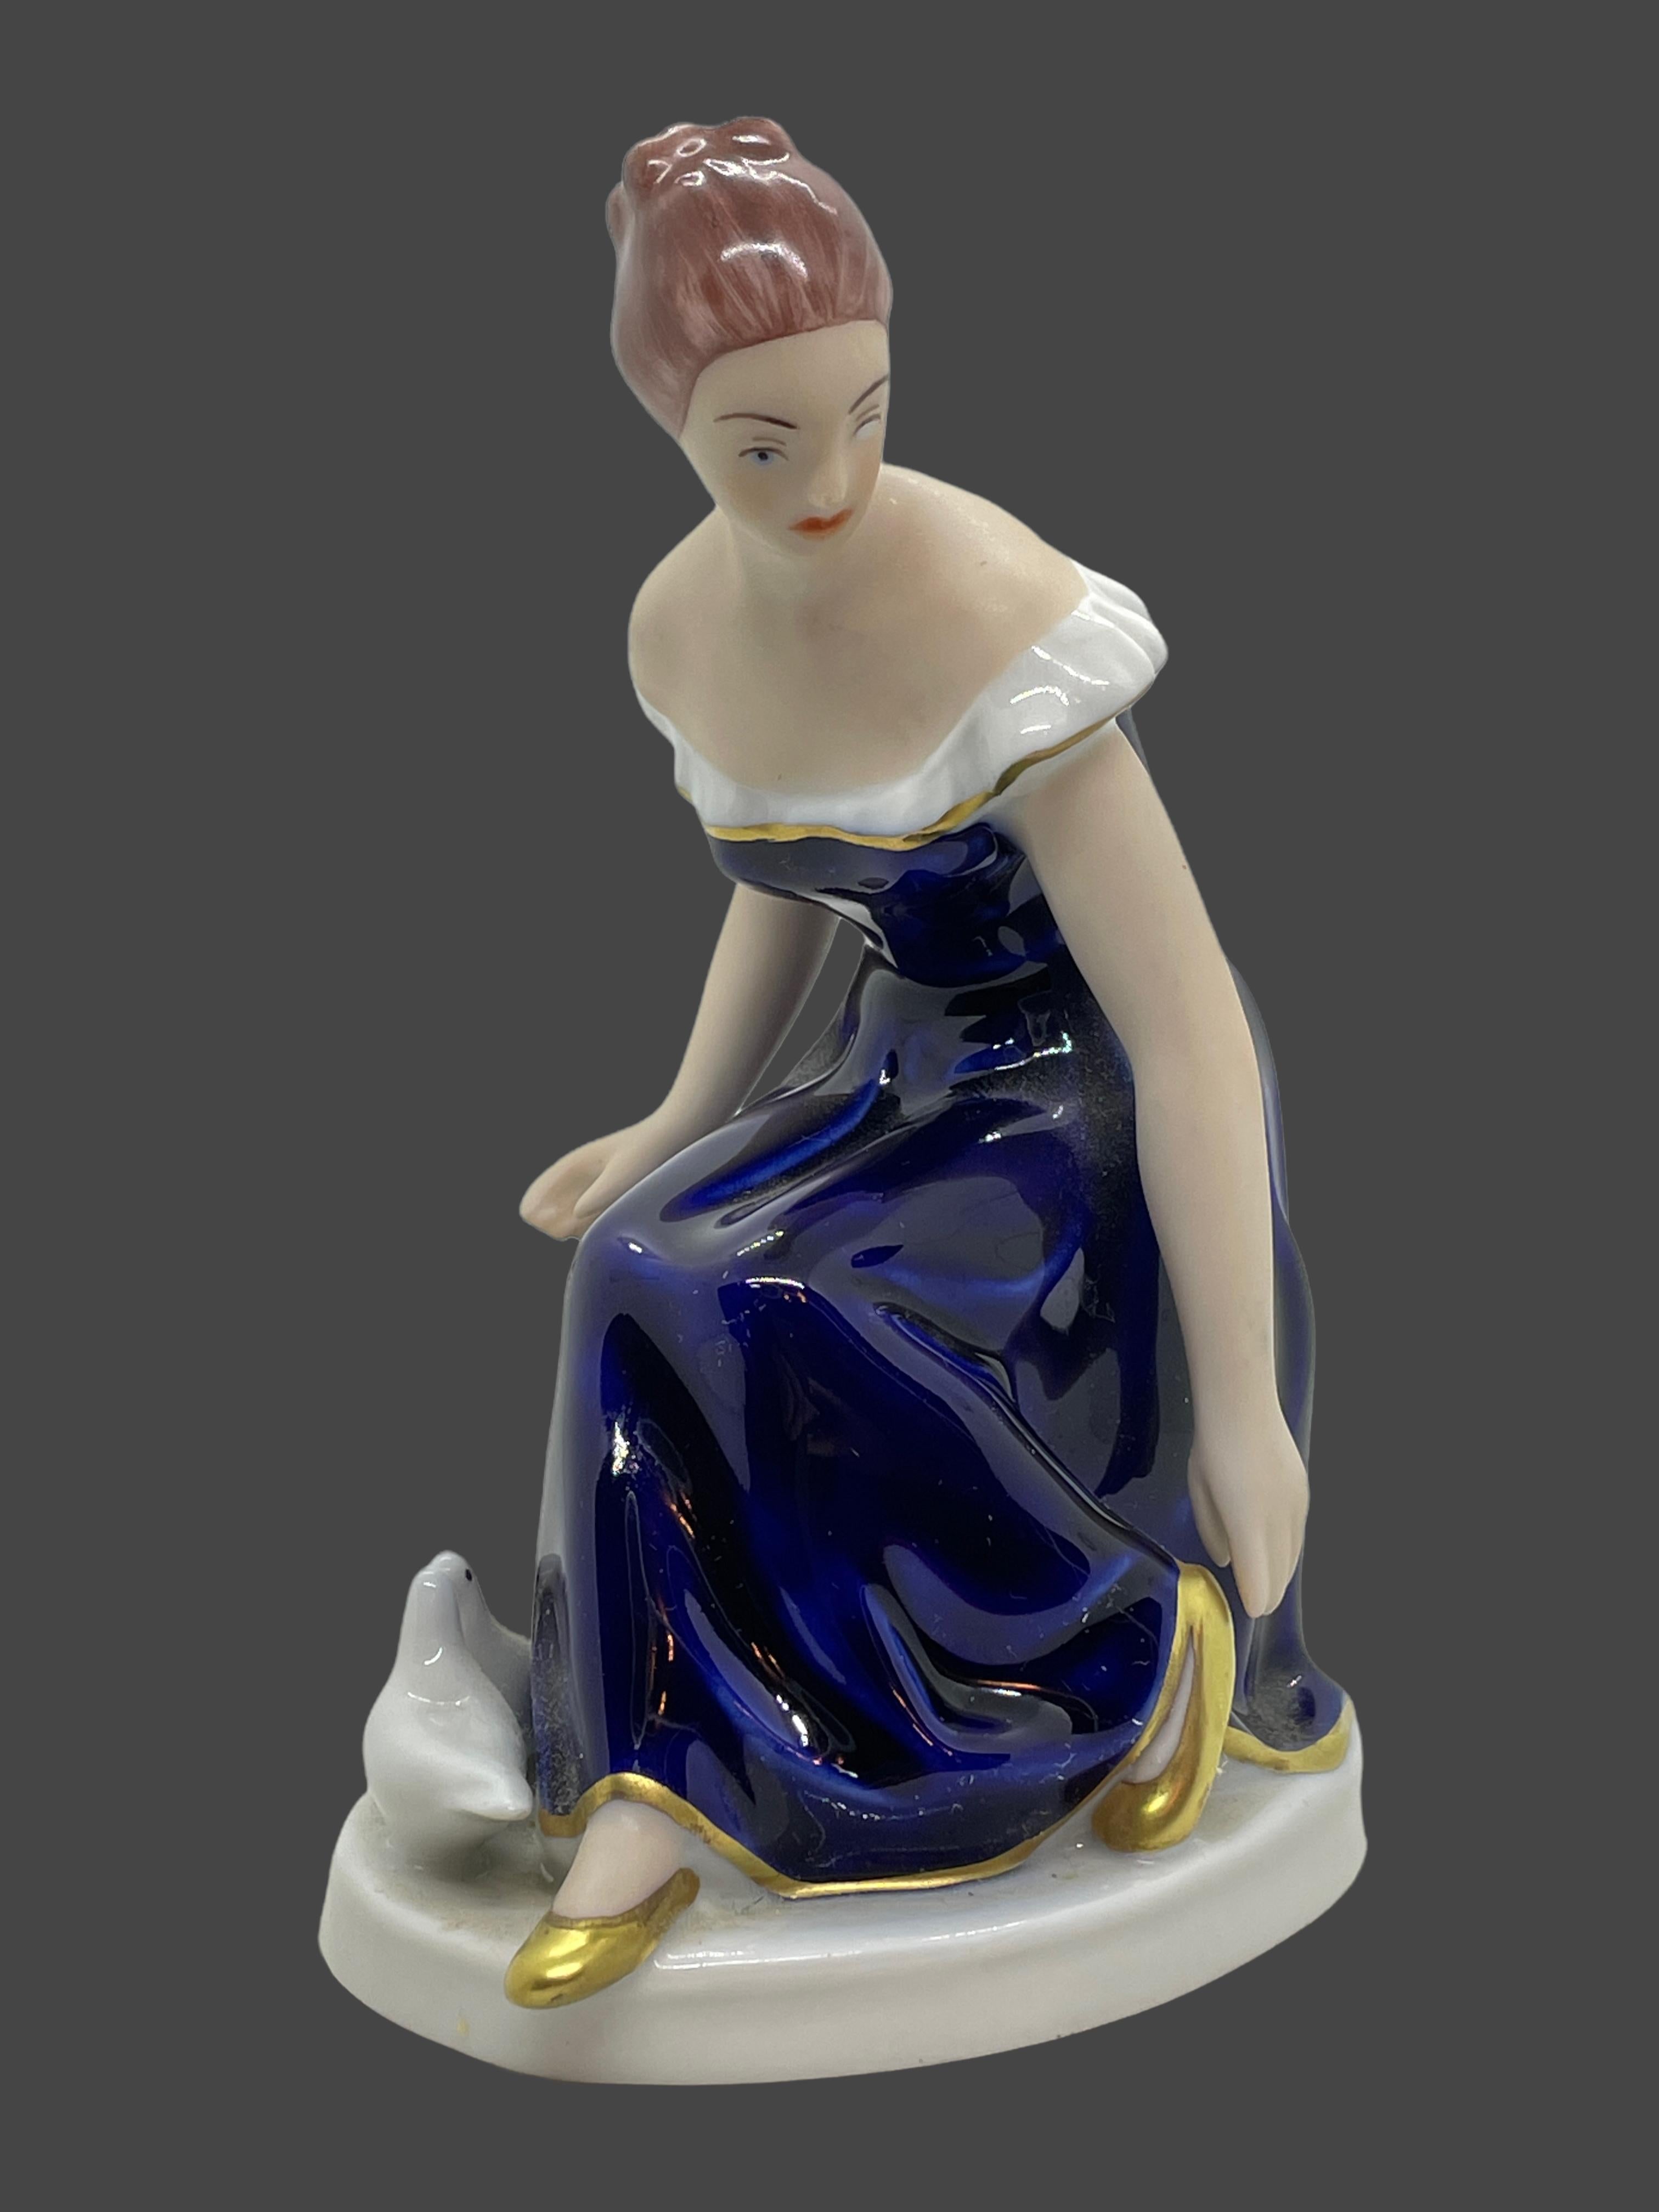 Une très belle sculpture en porcelaine Royal Dux Bohemia, milieu du 20e siècle, période moderne du milieu du siècle, Tchécoslovaquie. Une figurine en porcelaine très belle et détaillée. Avec la marque du fabricant sur le fond, Royal Dux Bohemia,